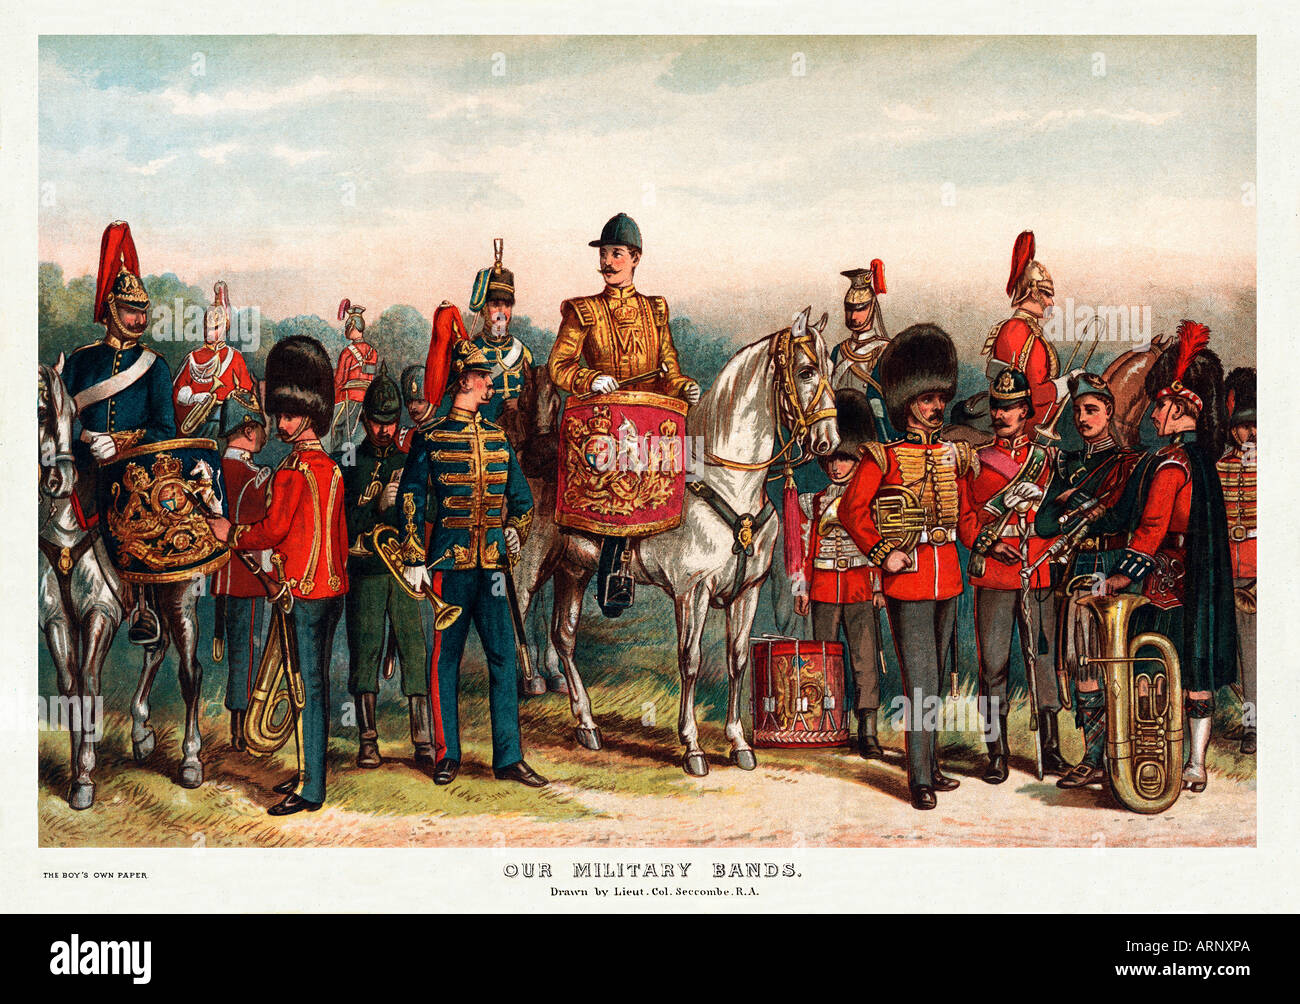 Las bandas militares de victoriano de impresión bandsmen del ejército británico por el Teniente Coronel Seccombe Foto de stock